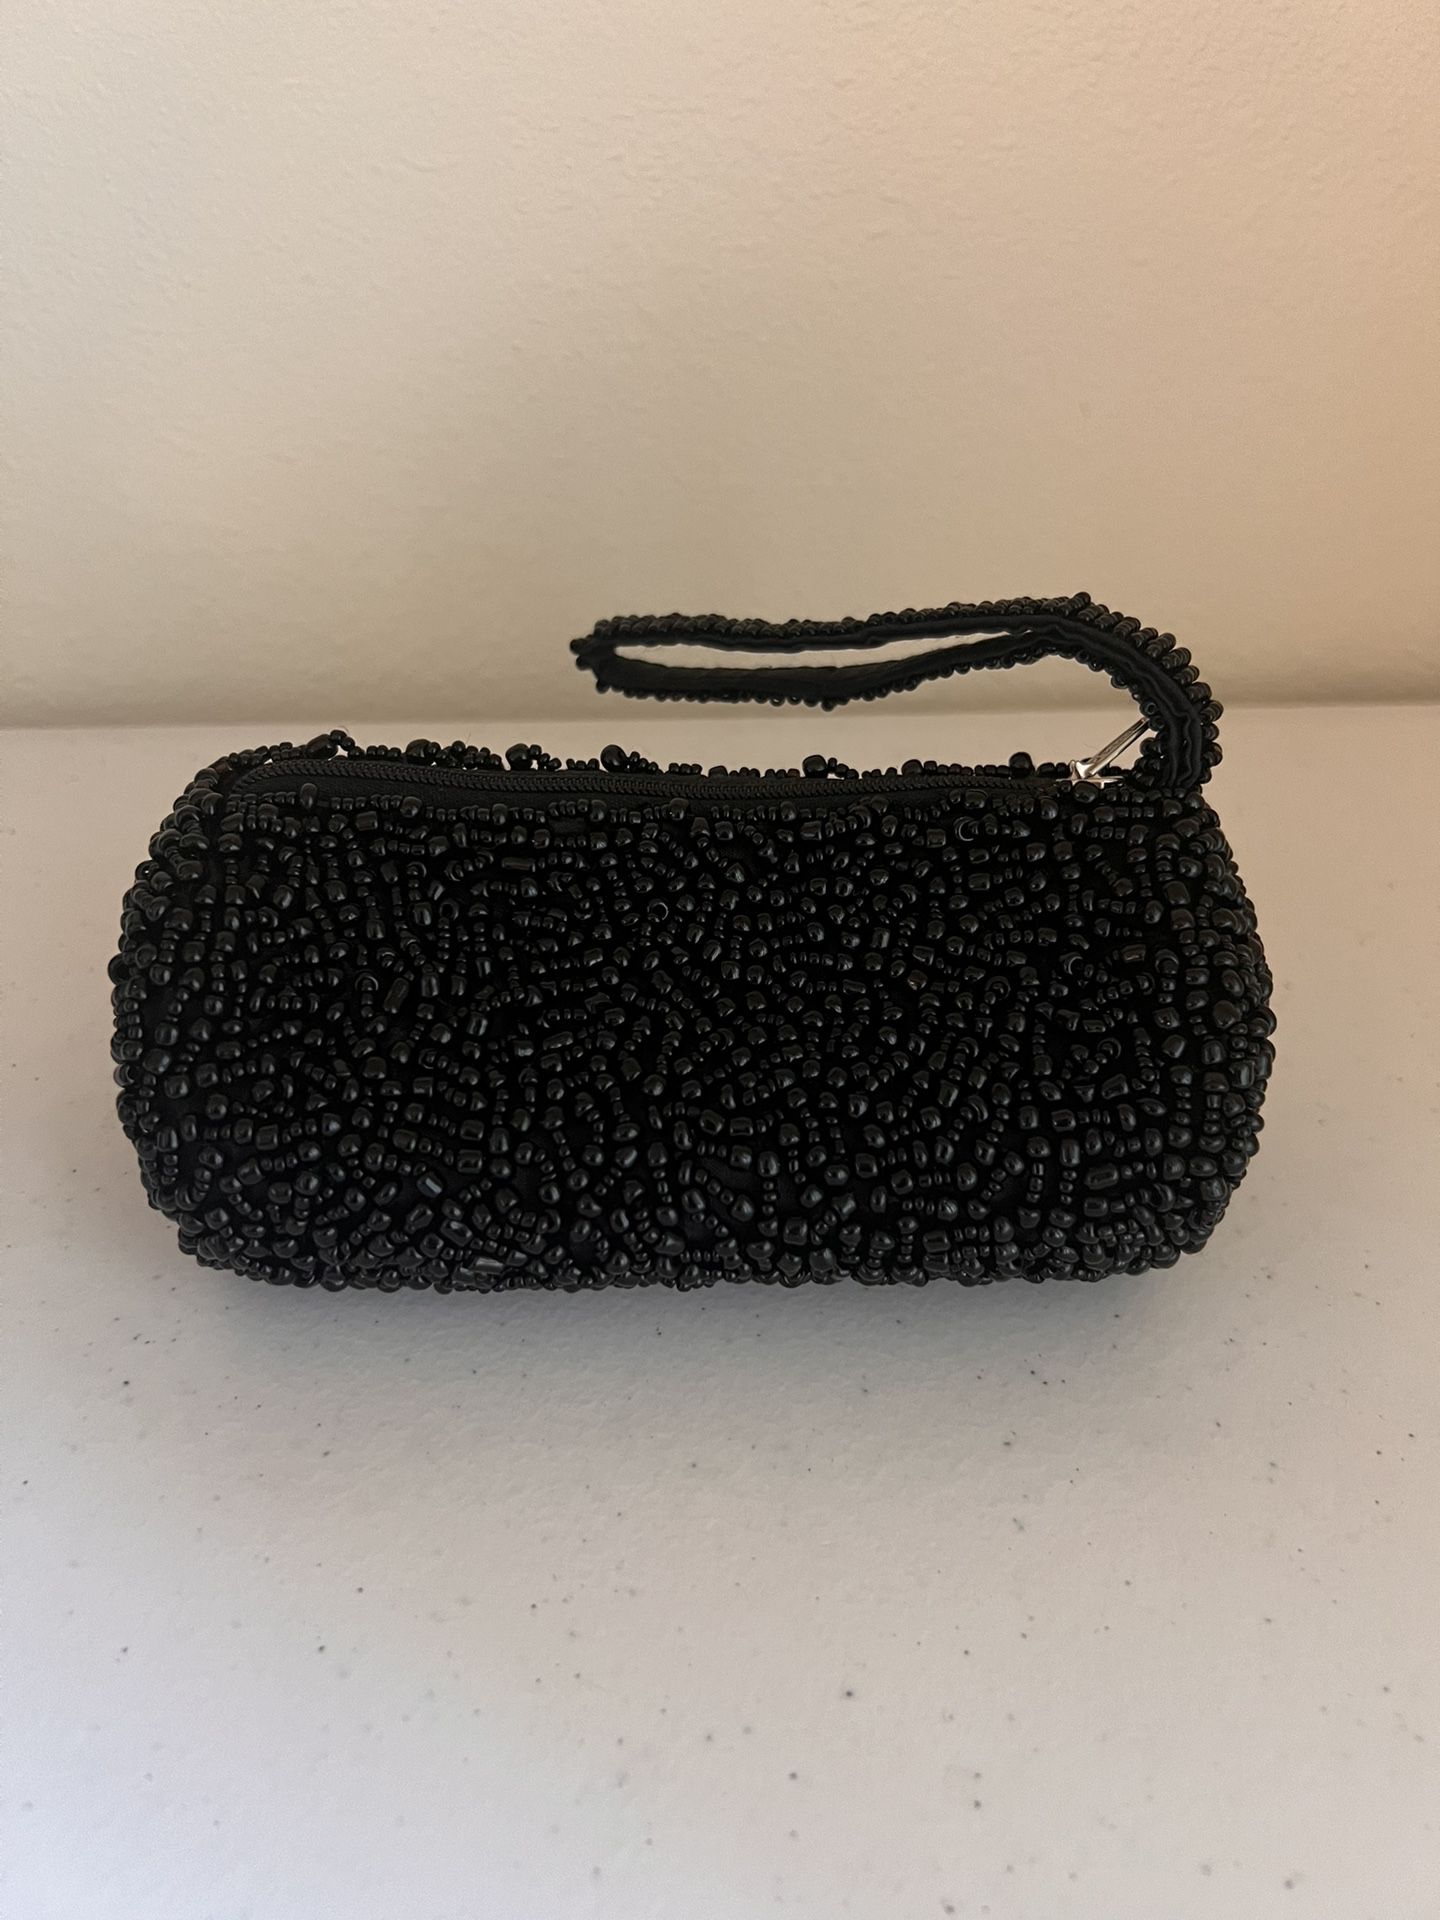 YKK Pewter Beaded Wristlet Pouch - 6" x 3" Woman’ bag